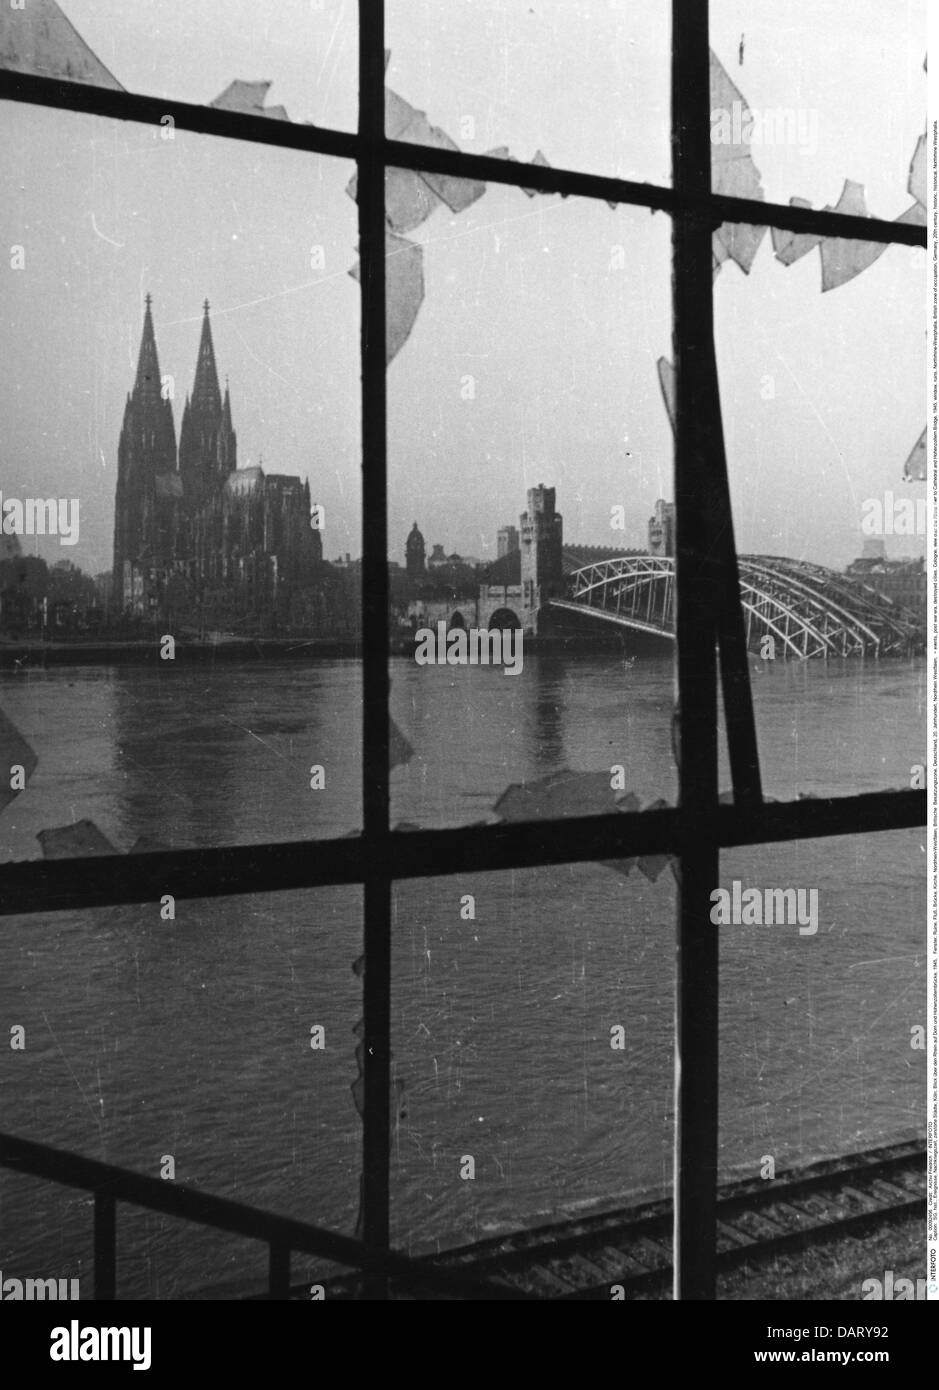 Eventi, era post-bellica, città distrutte, Colonia, vista sul fiume Reno alla Cattedrale e ponte Hohenzollern, 1945, diritti aggiuntivi-clearences-non disponibile Foto Stock